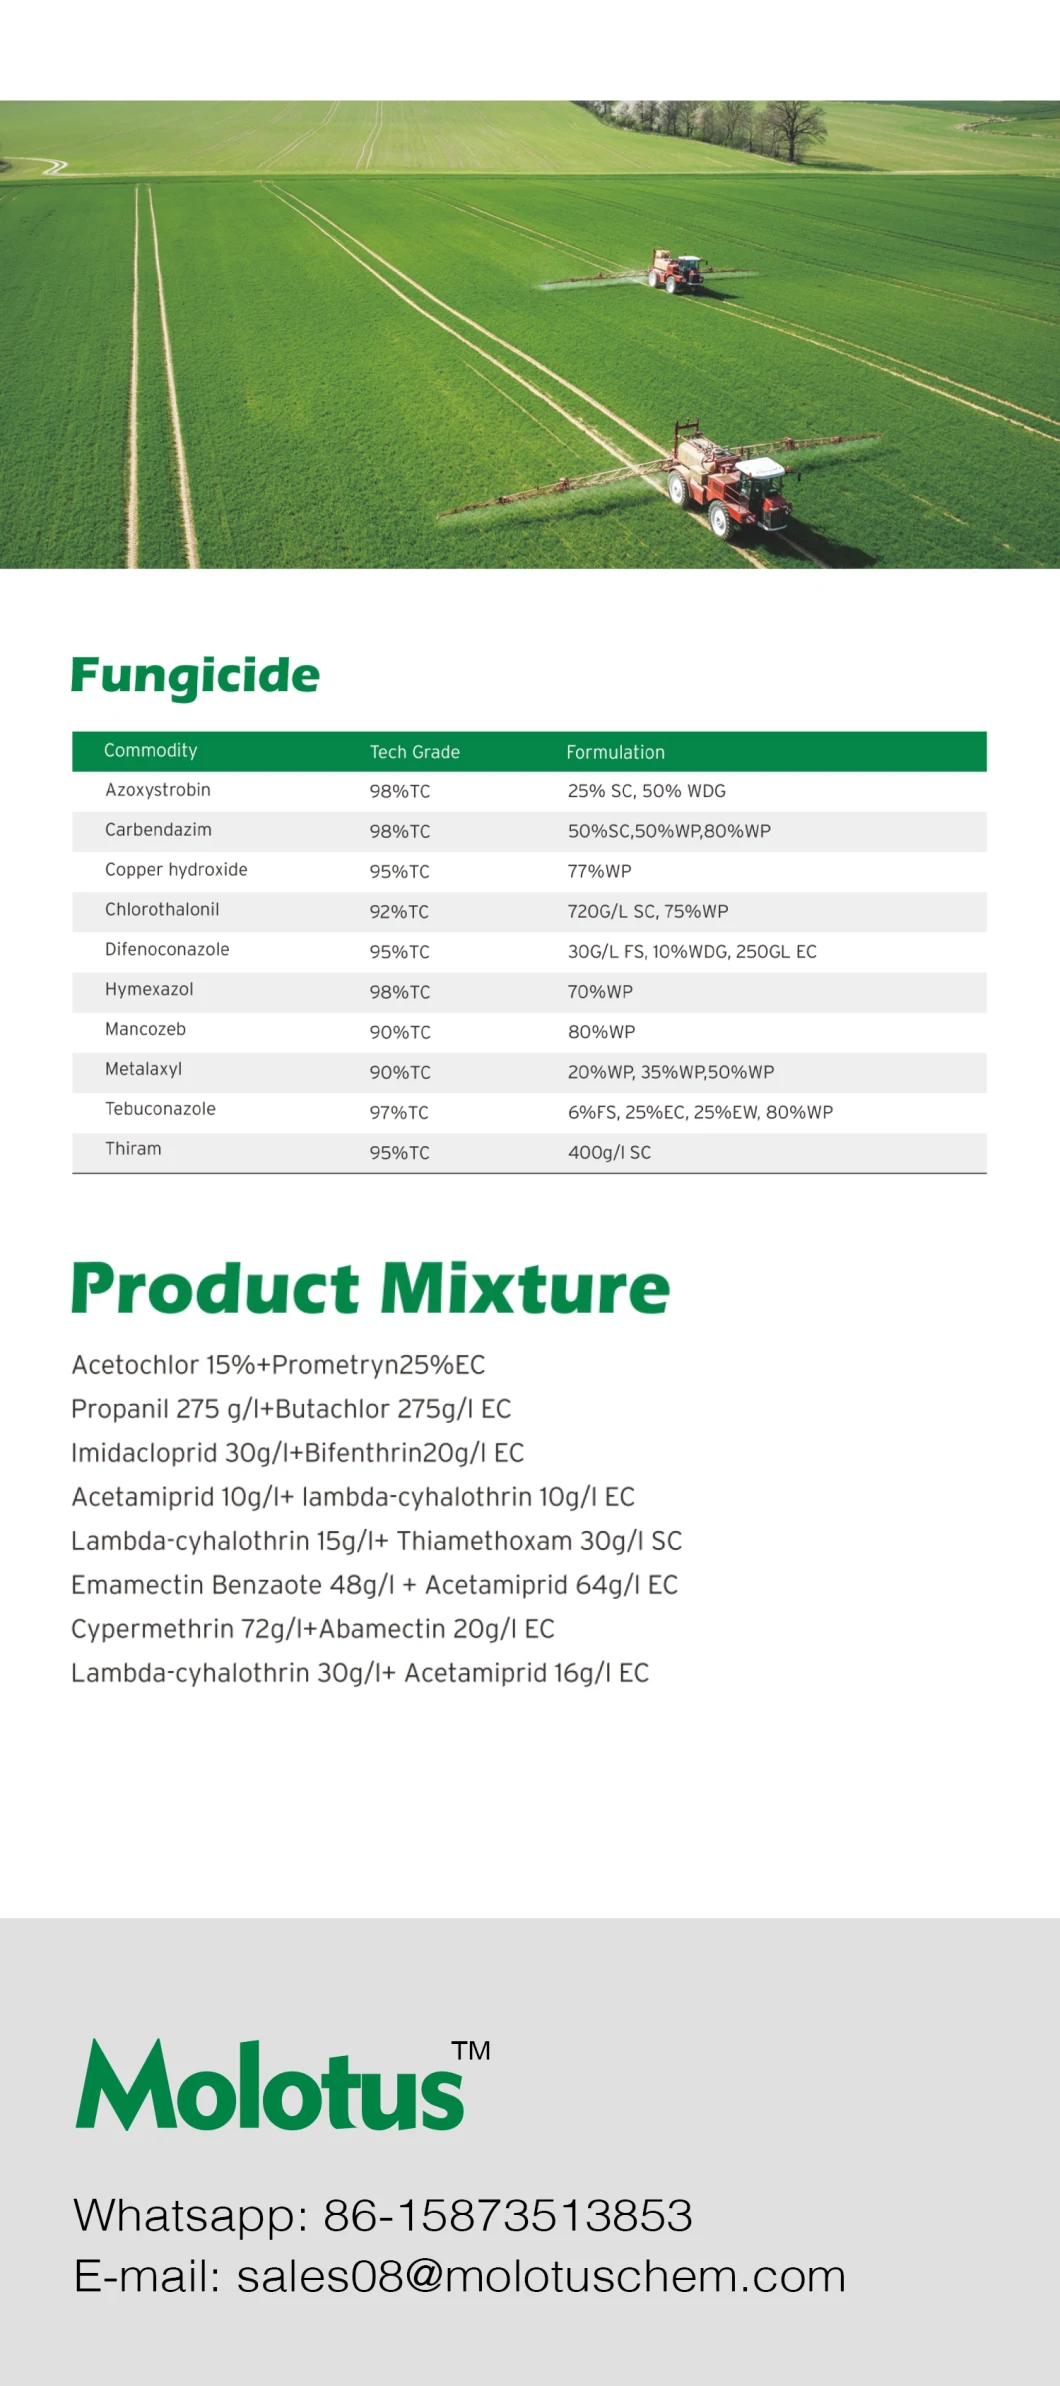 Codim 720 Wp Fungicides Mixture with Cuprous Oxide 600 G/Kg + Dimethomorph 120 G/Kg